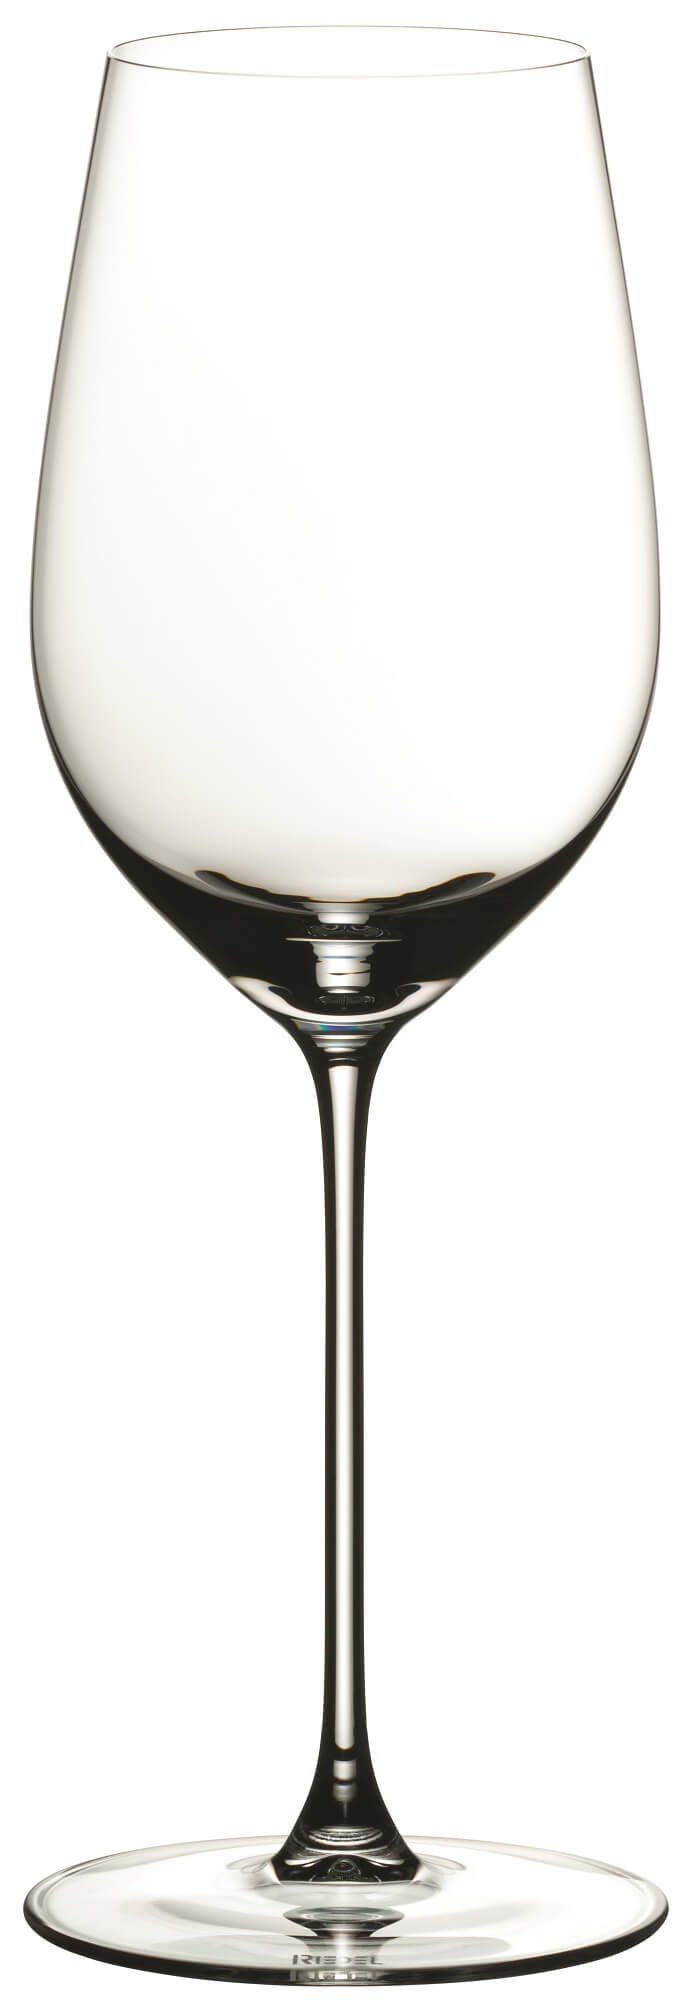 Riesling/Zinfandel Glas Veritas, Riedel - 395ml (2 Stk.)